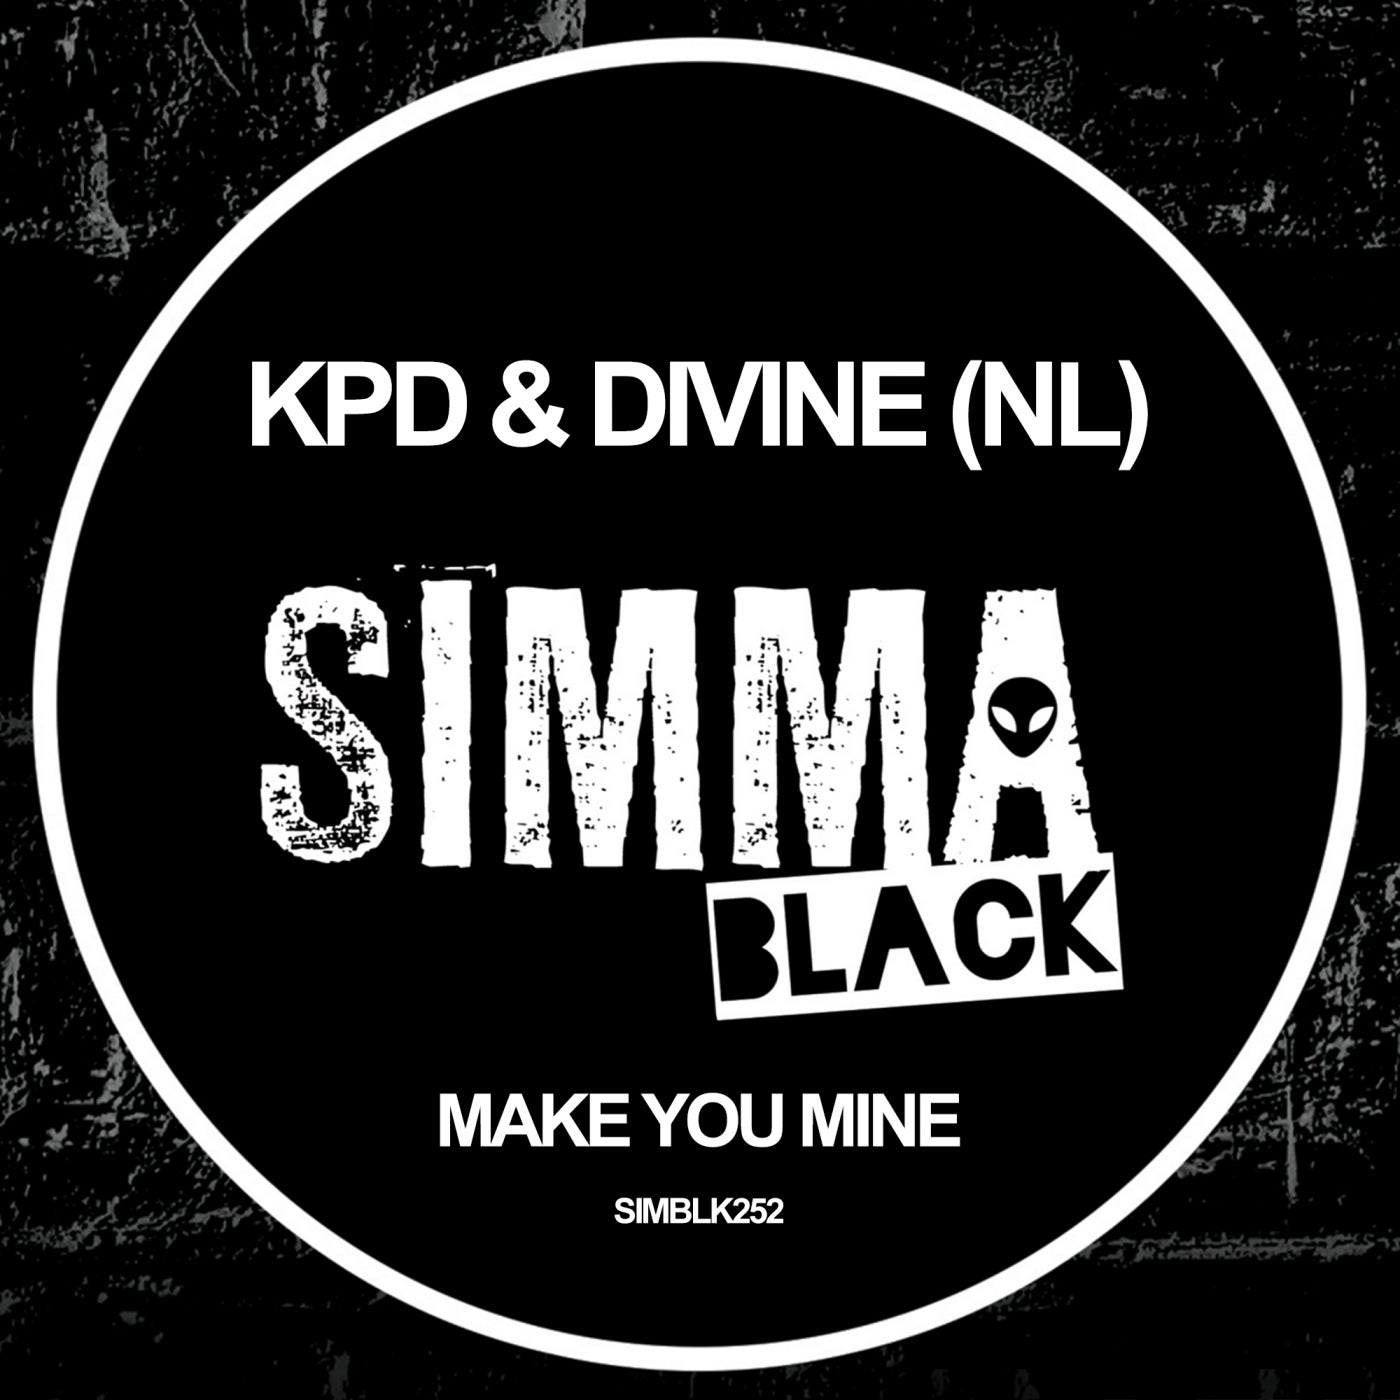 DiVine (NL), KPD - Make You Mine [SIMBLK252]